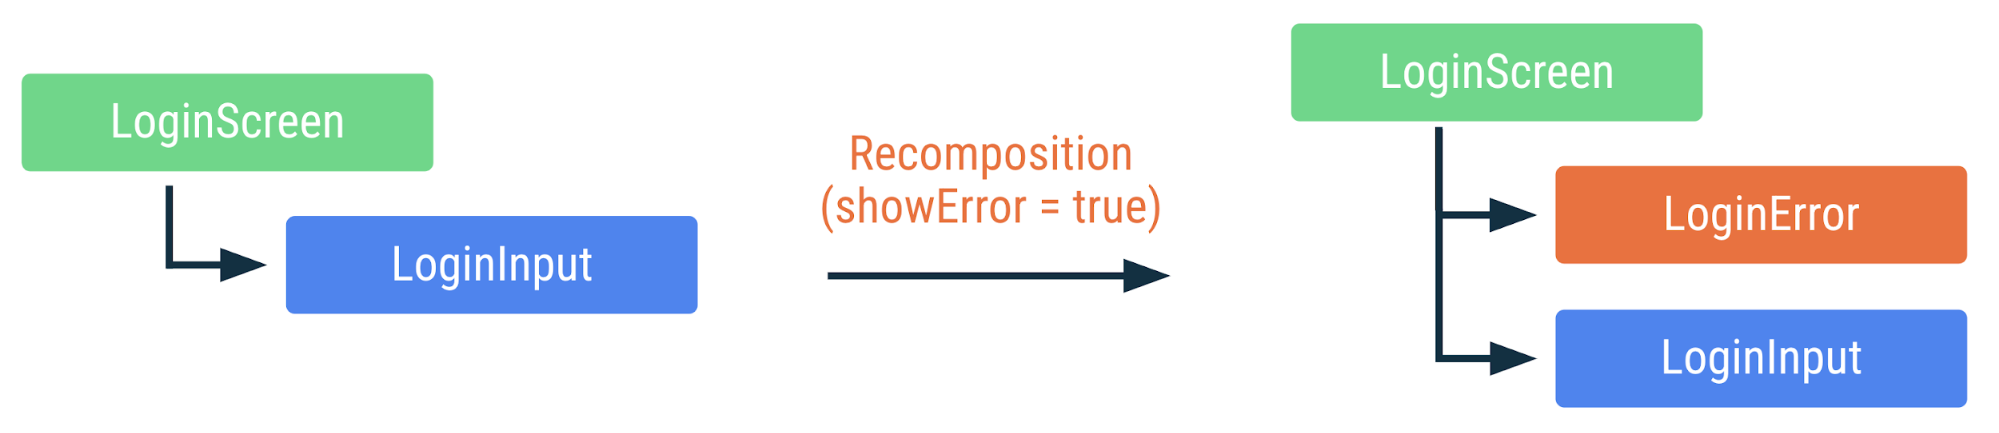 Diagrama en el que se muestra cómo se recompone el código anterior si se cambia la marca showError a &quot;true&quot;. Se agrega el elemento componible LoginError, pero los demás elementos no se vuelven a componer.